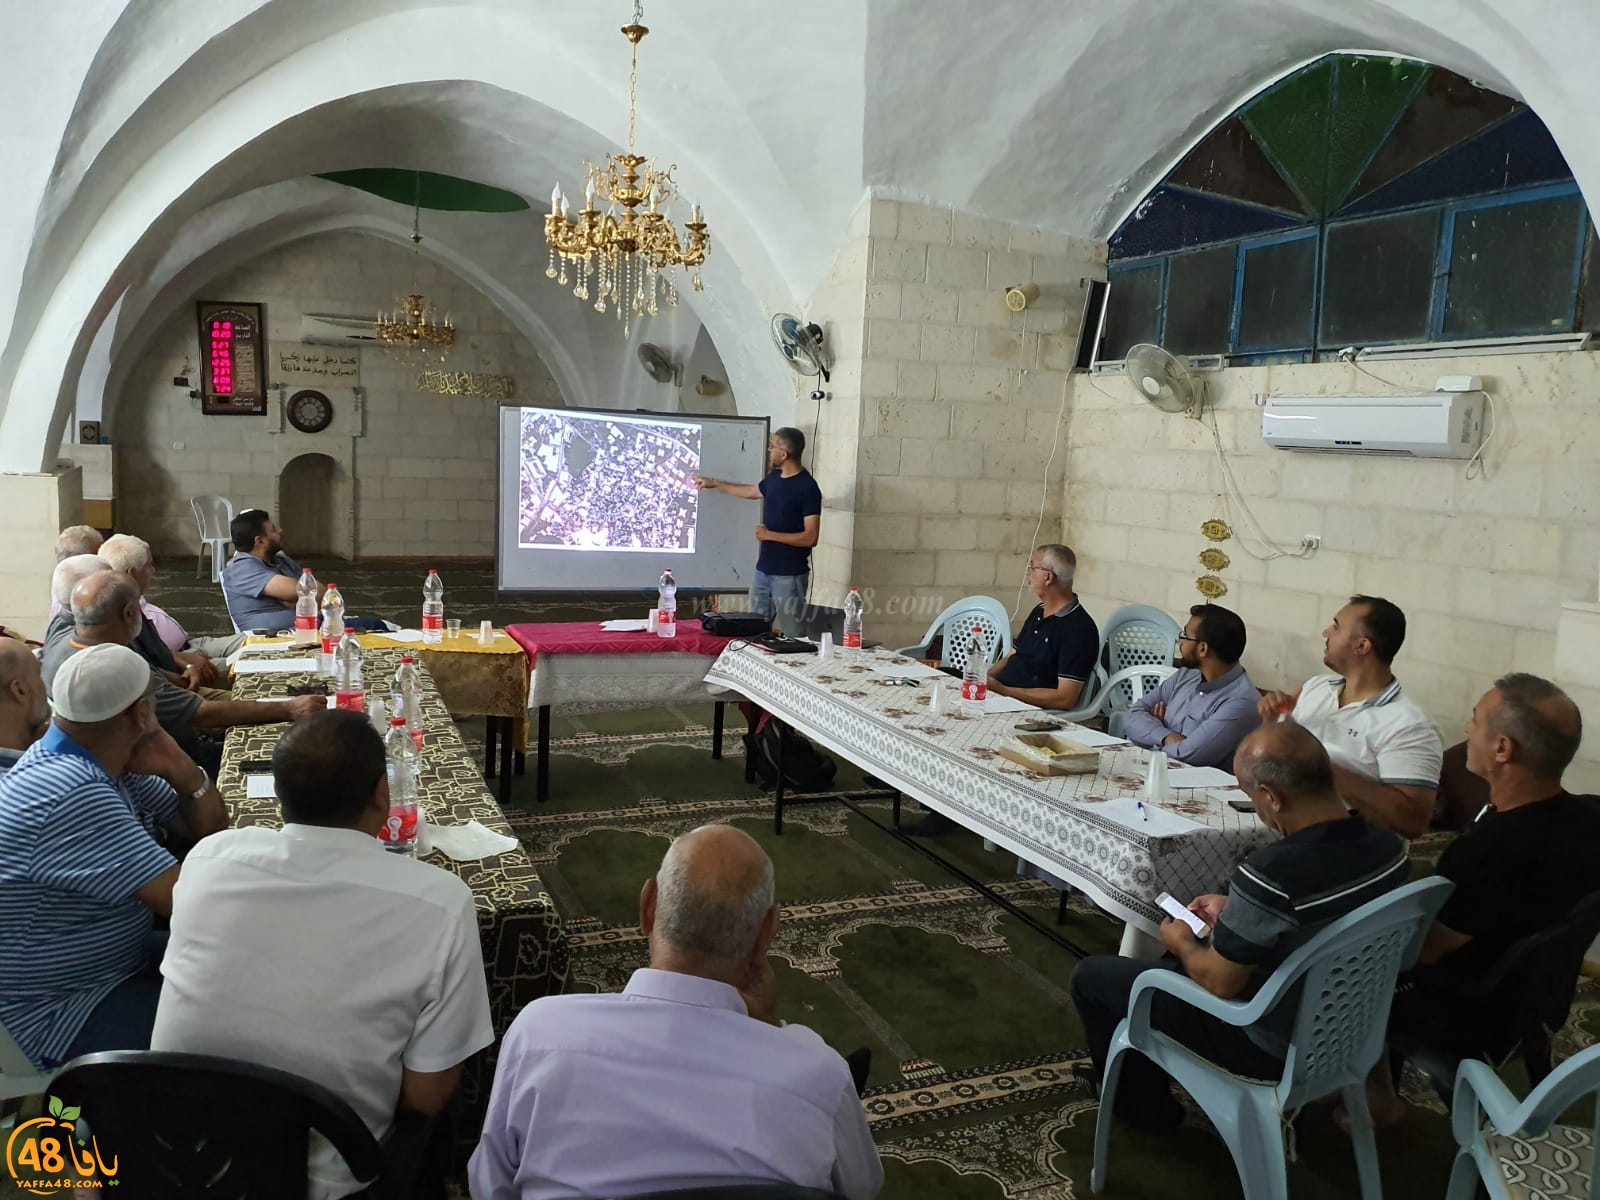 بالصور: اجتماع ومحاضرة في اللد تمهيداً لاطلاق معسكر للحفاظ على المقدسات